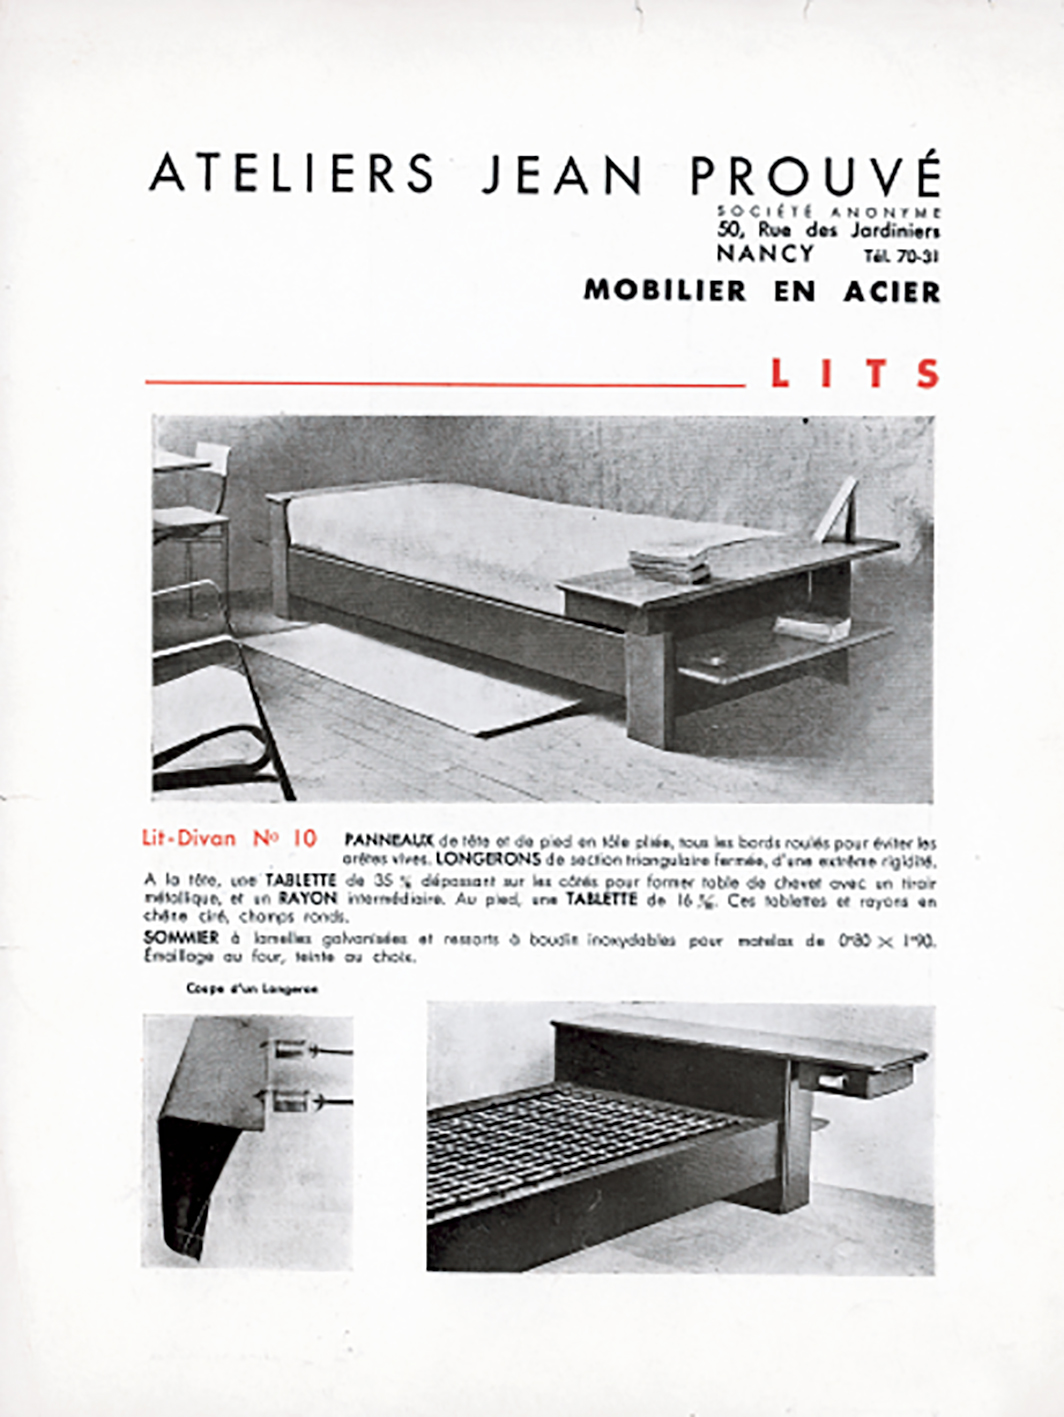 Advertising brochure <i>Ateliers Jean Prouvé, Mobilier en acier,</i>Nancy, ca. 1935.